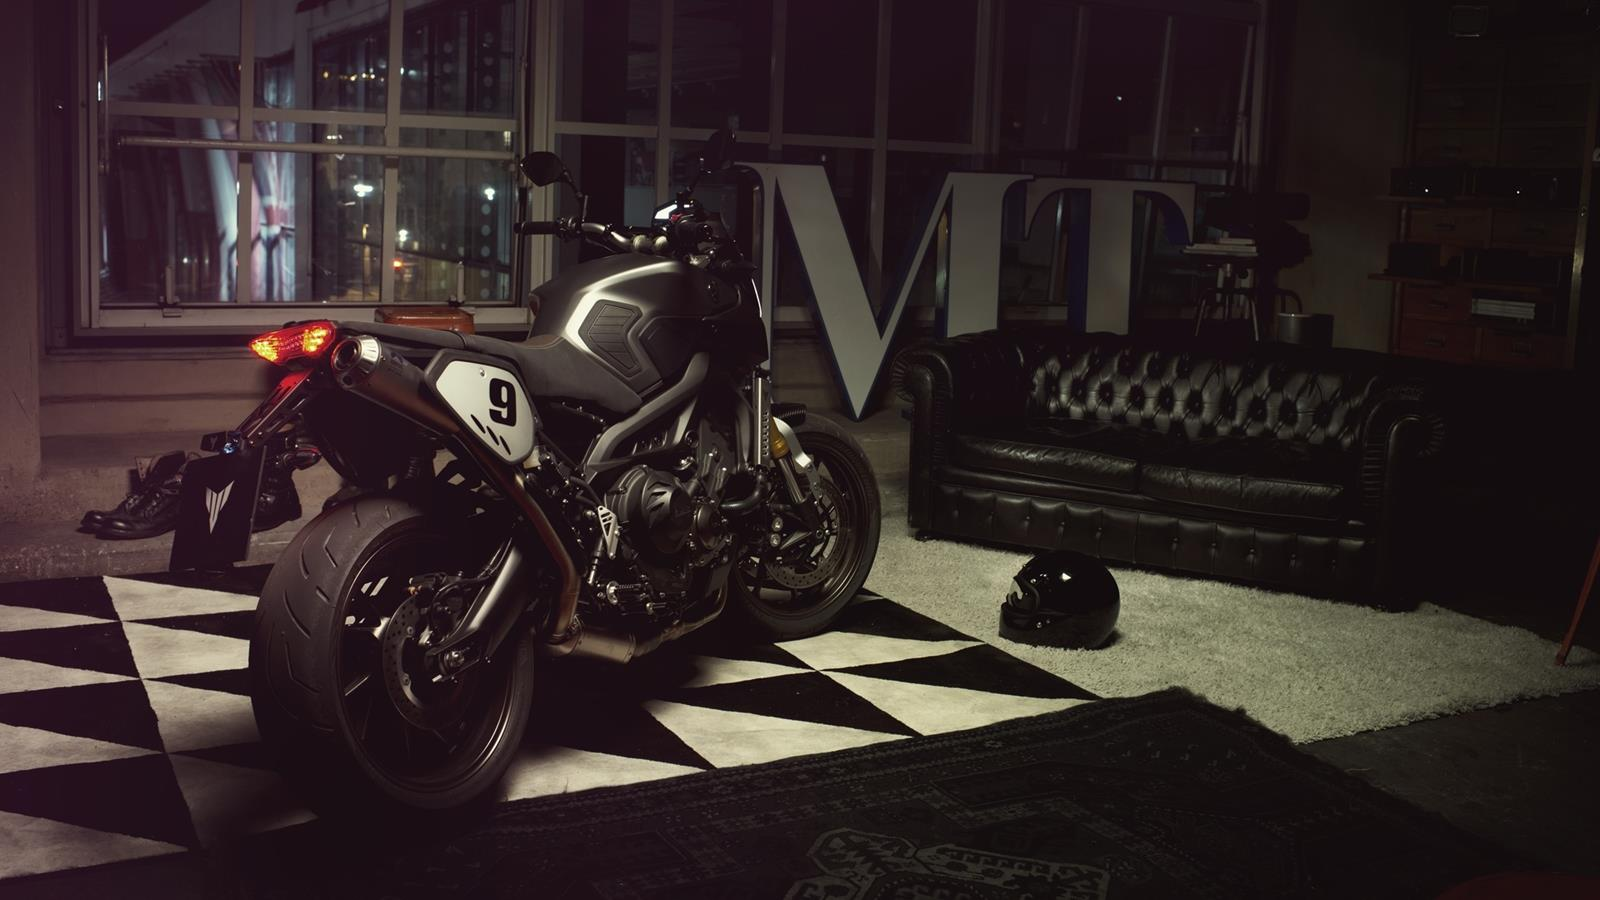 Silniční motocykl nové generace Sport Tracker je důmyslně zdokonalenou verzí modelu MT-09 pro jezdce, kteří nestojí o kompromisy v oblasti špičkového výkonu a kultovního designu.